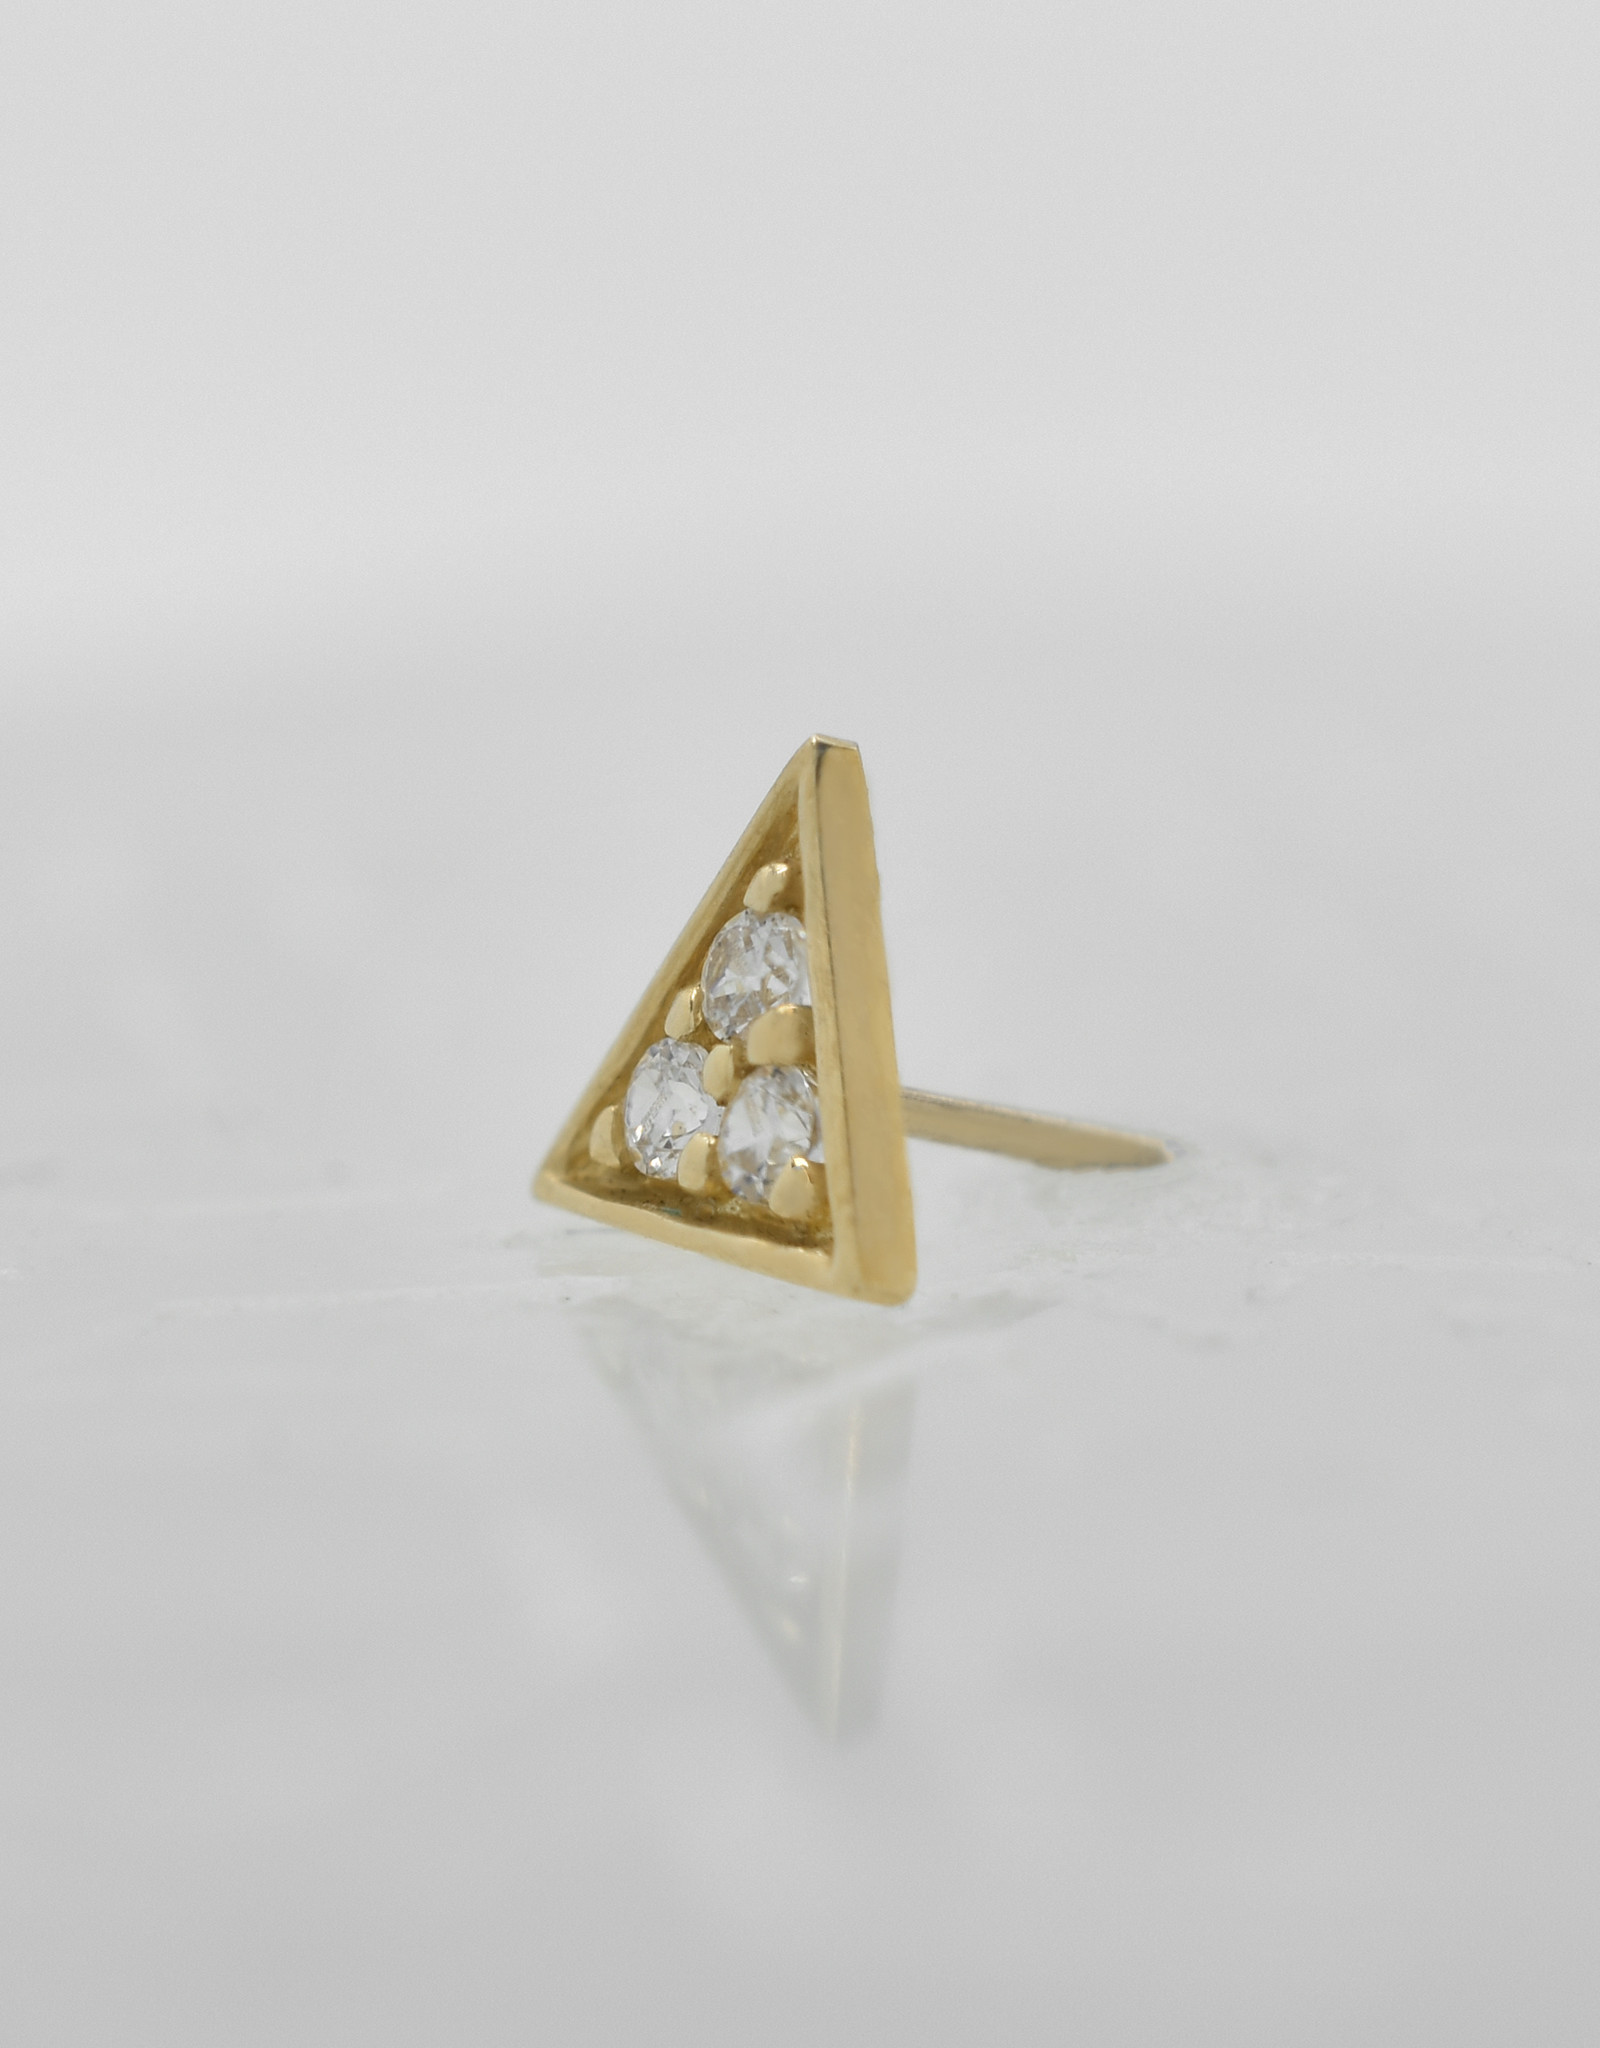 Junipurr Junipurr Gold Triangle with White CZ YG